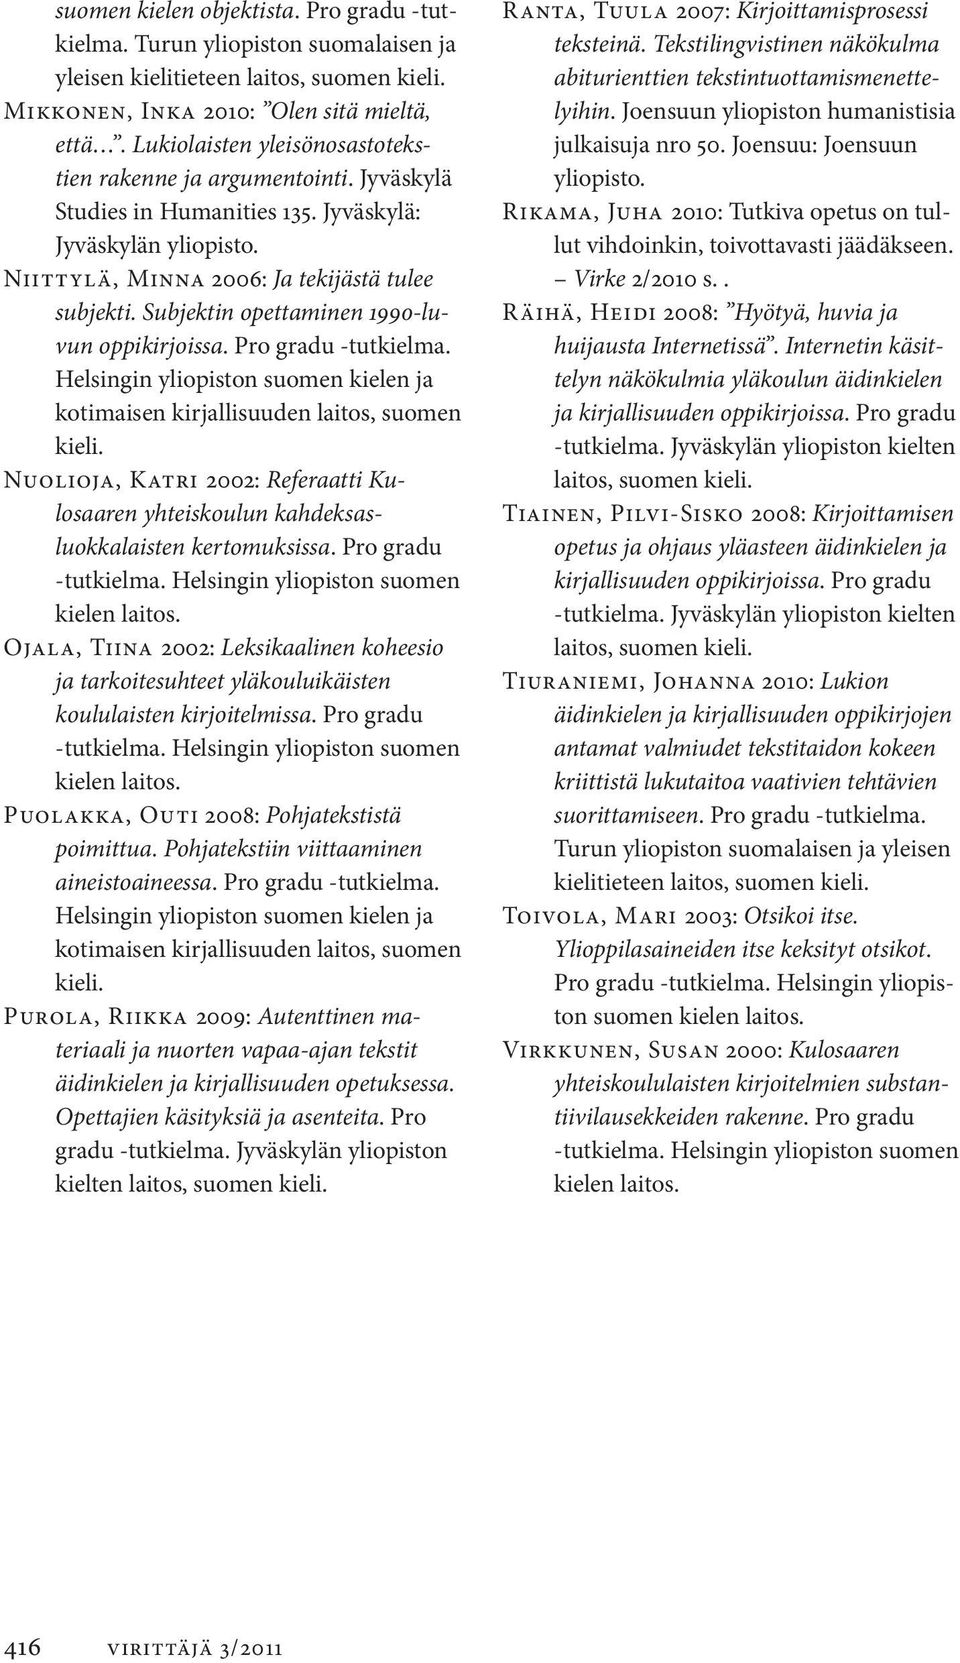 Subjektin opettaminen 1990-luvun oppikirjoissa. Pro gradu tutkielma. Helsingin yliopiston suomen kielen ja kotimaisen kirjallisuuden laitos, suomen kieli.